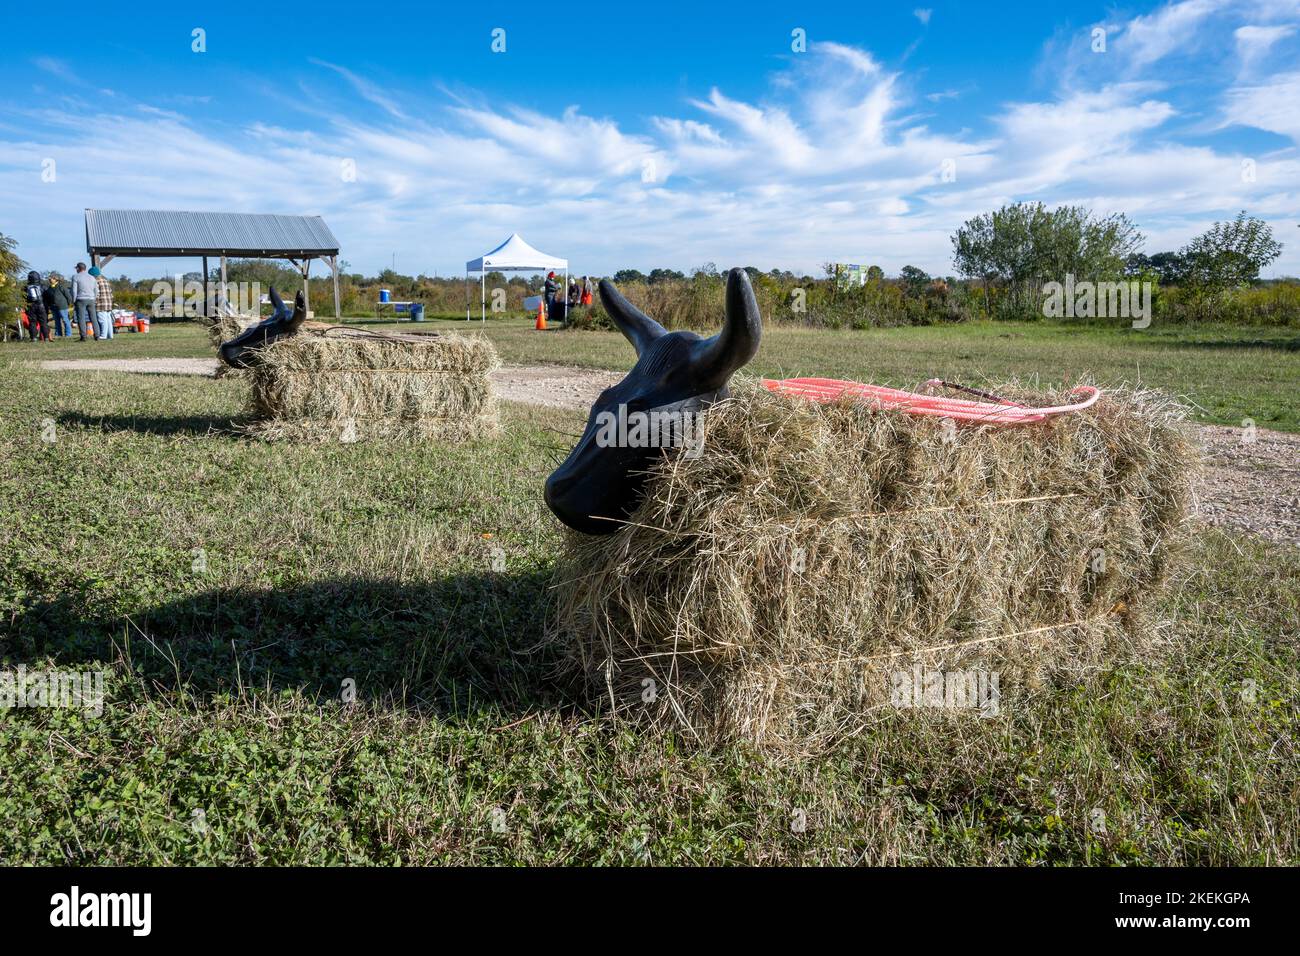 Balles de foin fixées avec des têtes de vache et une corde pour que les enfants puissent jouer dans un parc local. Houston, Texas, États-Unis. Banque D'Images